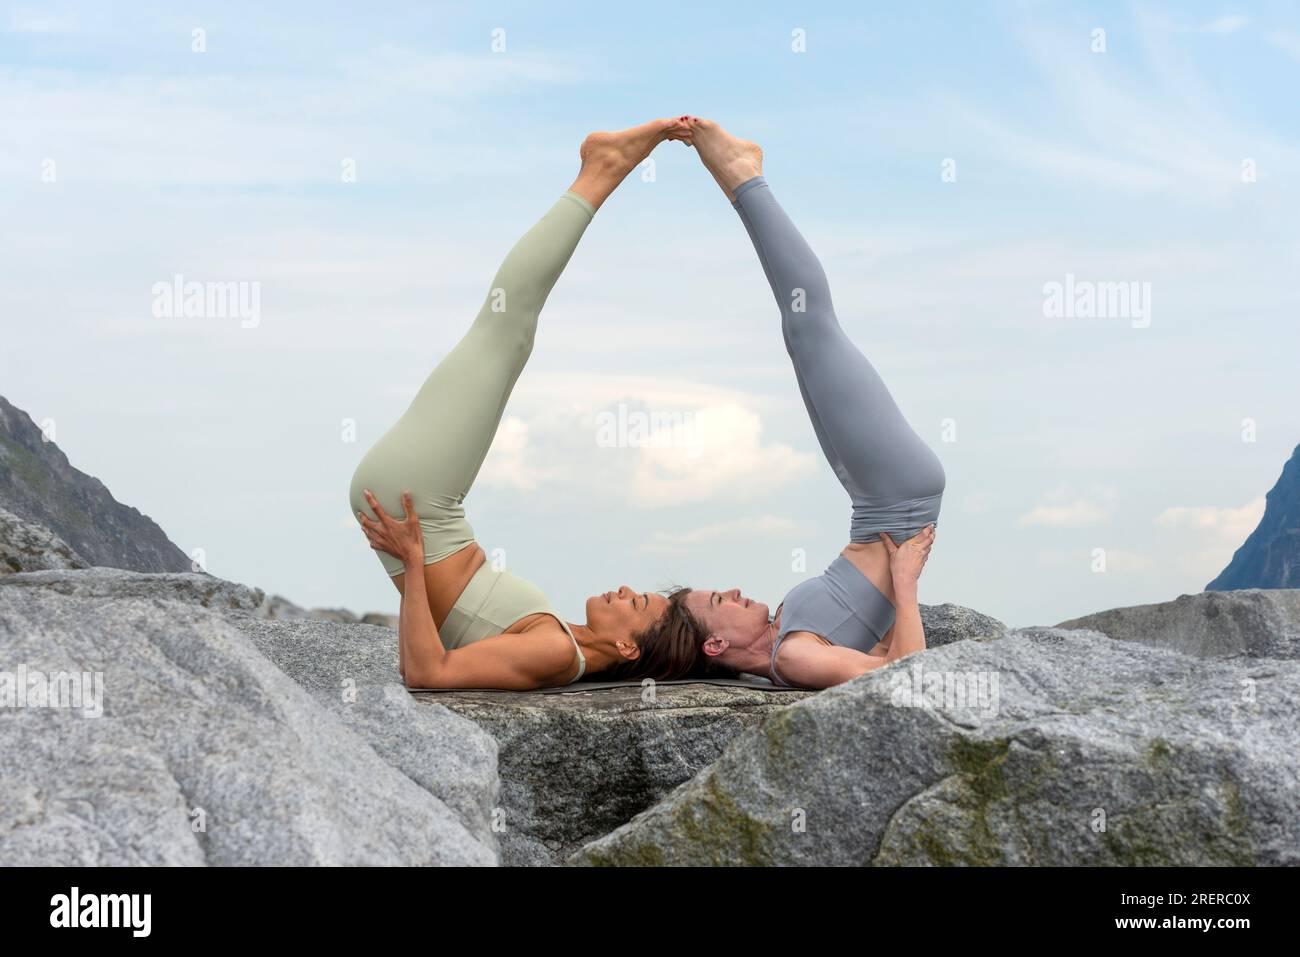 deux femmes faisant de l'acro yoga à l'extérieur, fond de montagne rocheuse. Banque D'Images